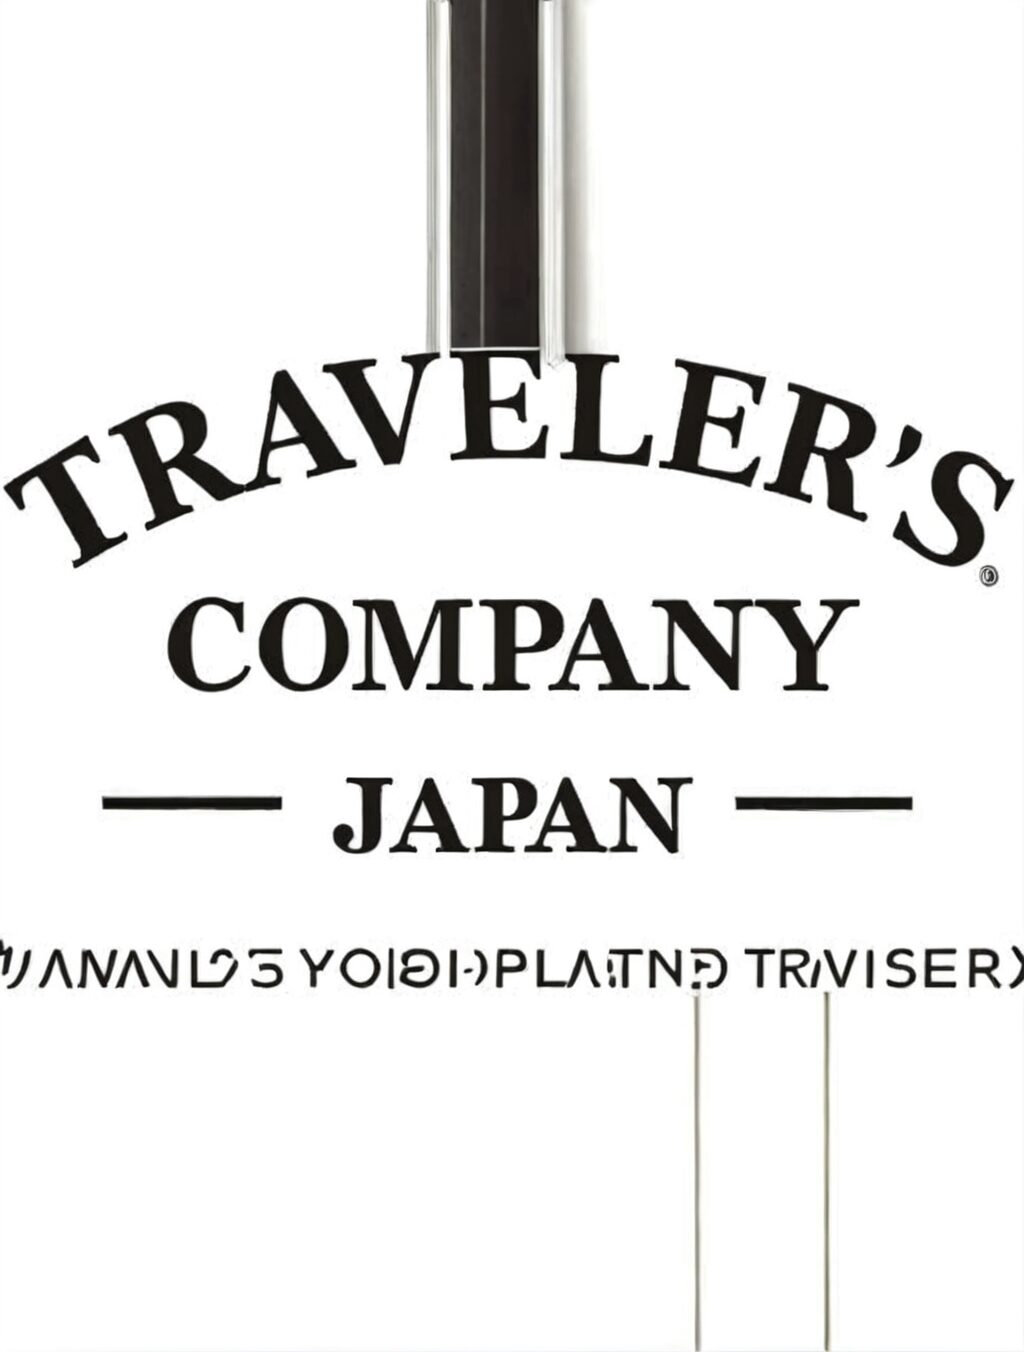 traveler's company japan